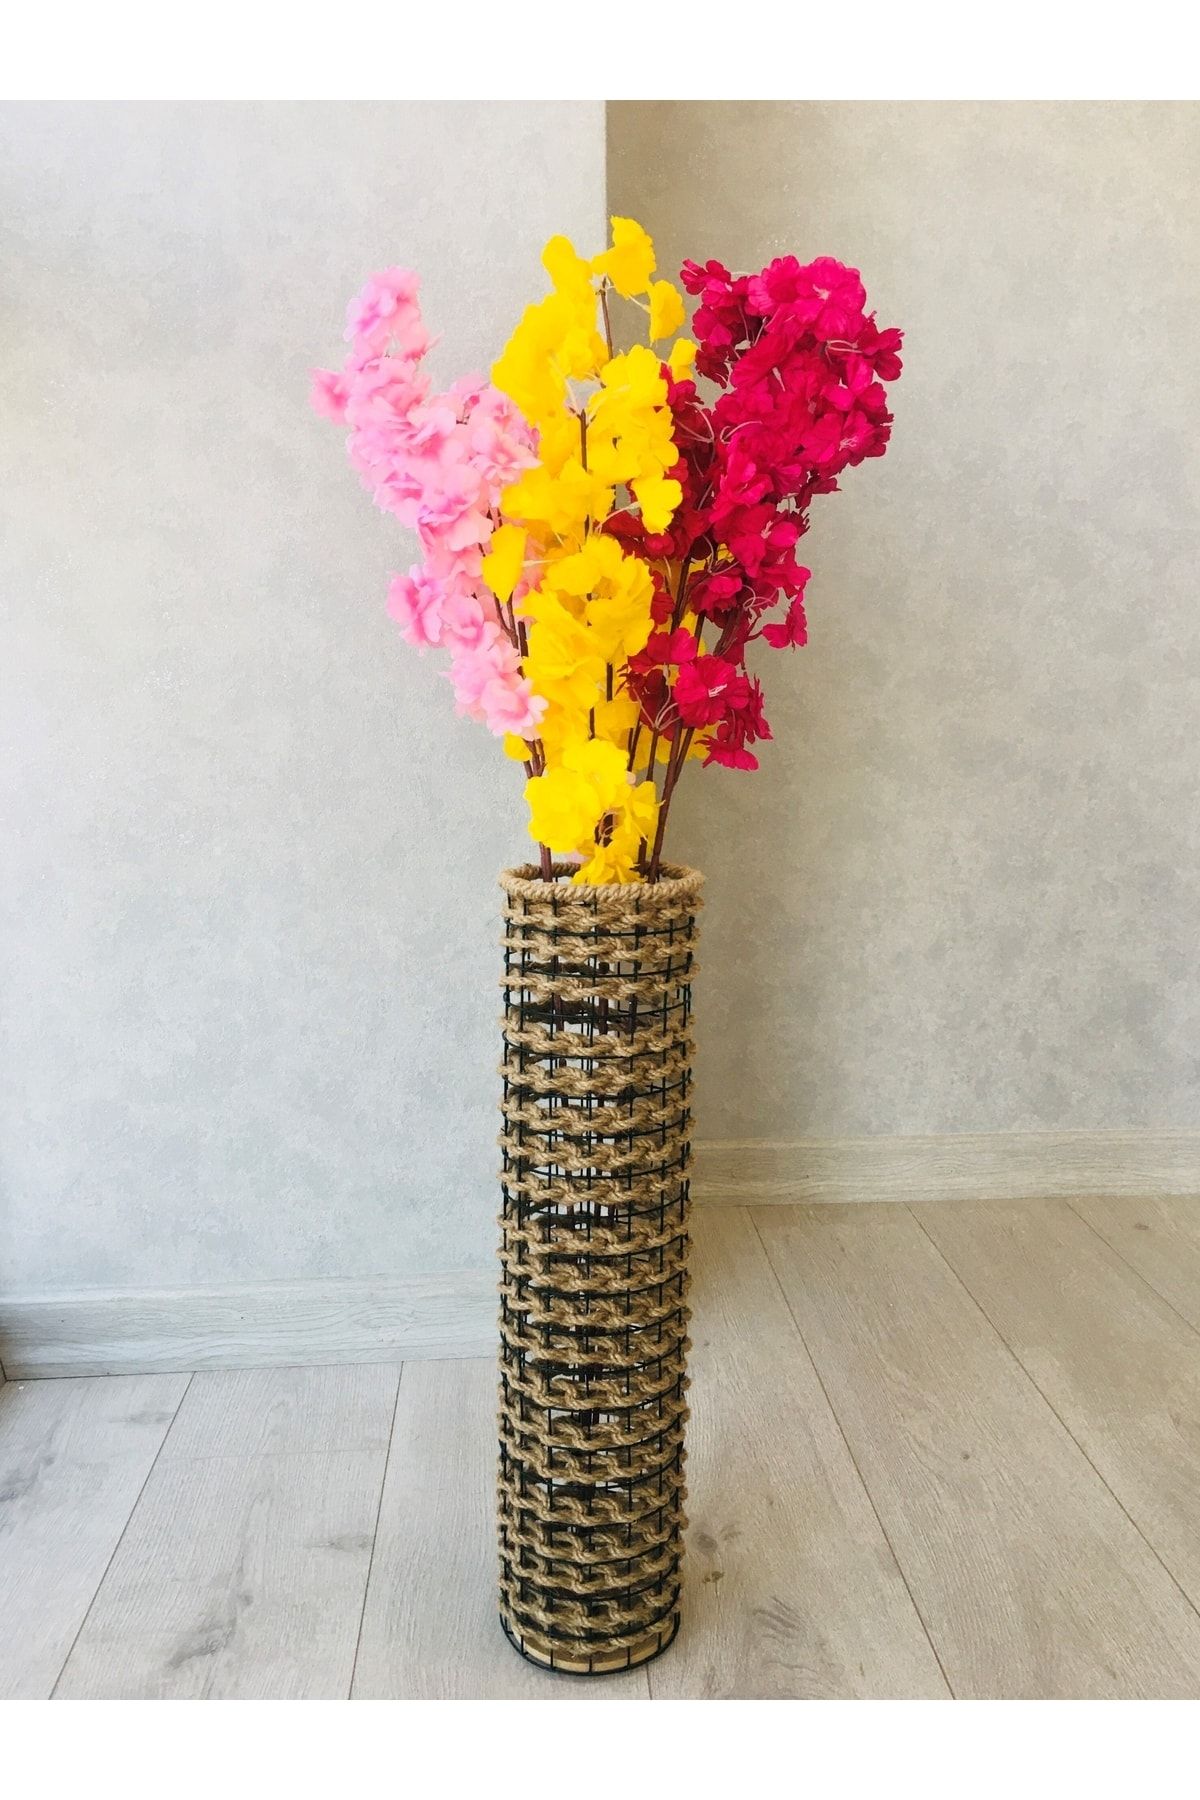 Asenya Hasır Örgü Vazo 60 Cm Ters Örgülü Tasarım Vazo Çiçeklik Yapay Çiçek Vazosu Dekoratif Saksı